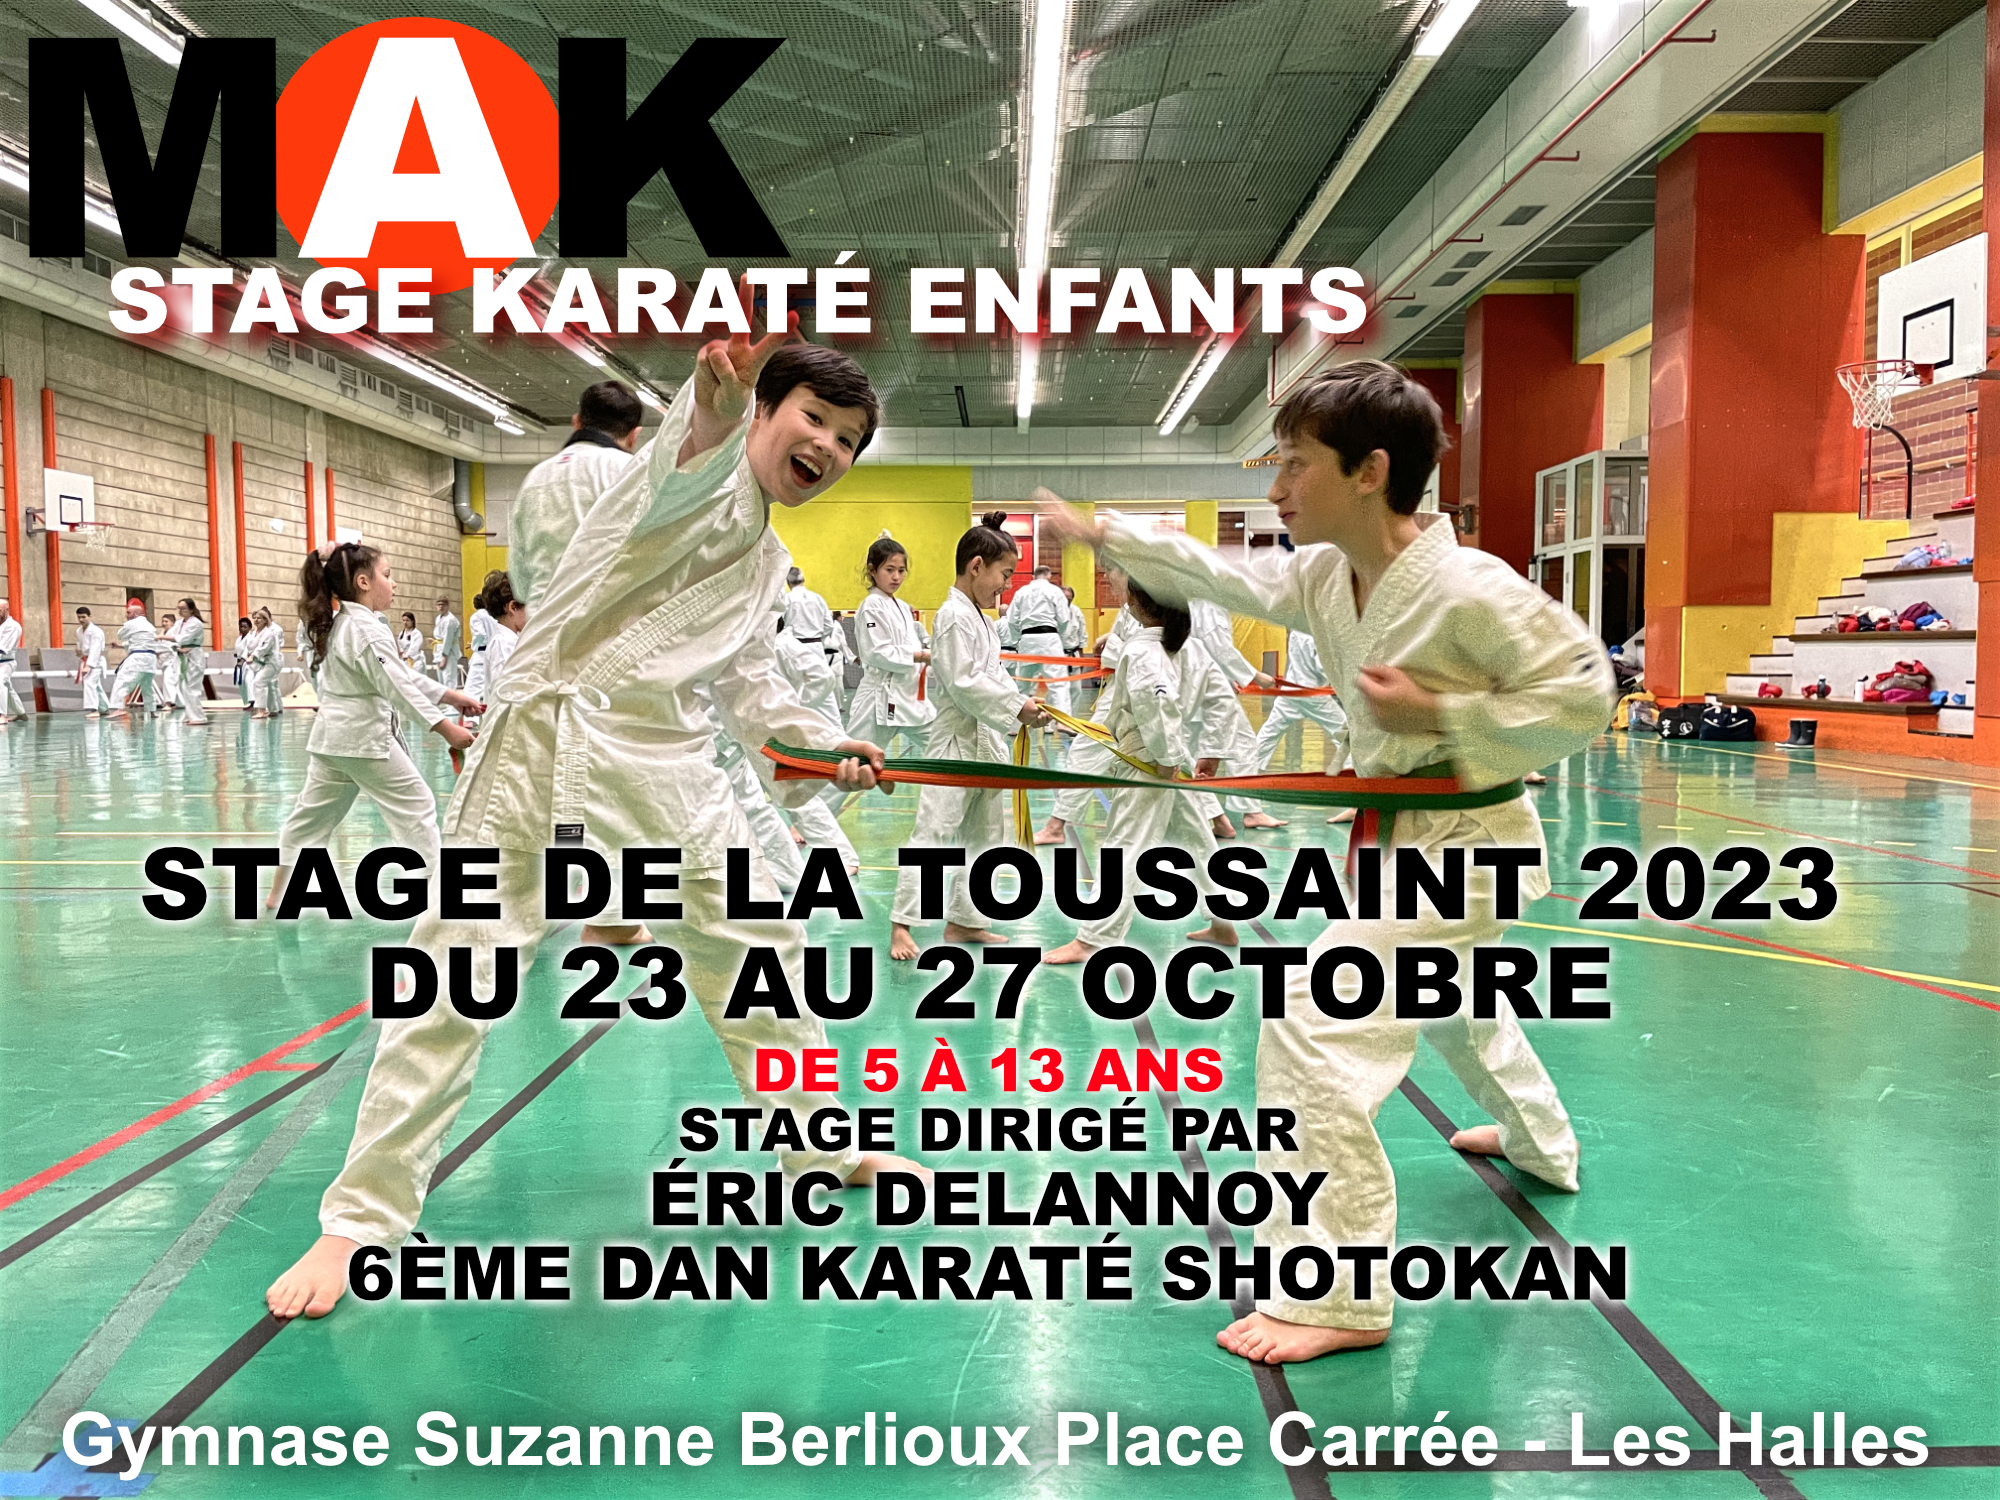 Stage Karate enfants vacances Toussaint 2023